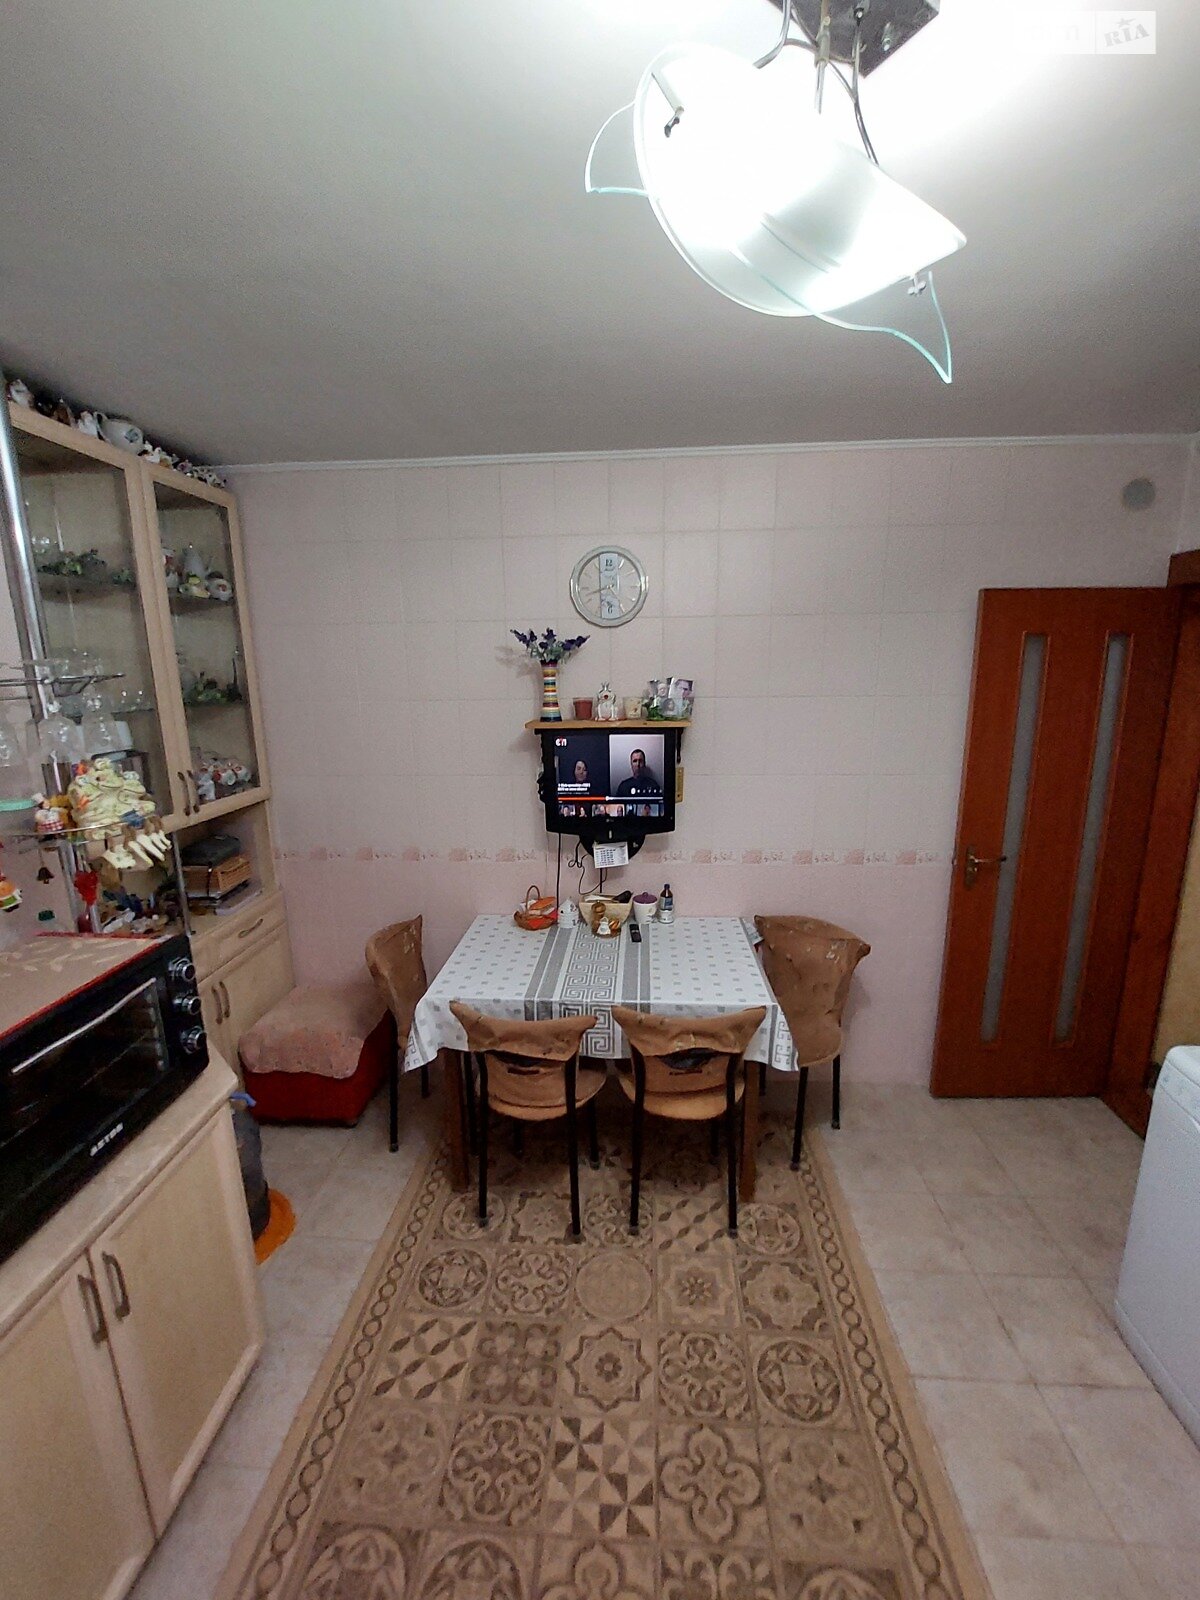 Продаж частини будинку в Миколаєві, район Заводський, 3 кімнати фото 1